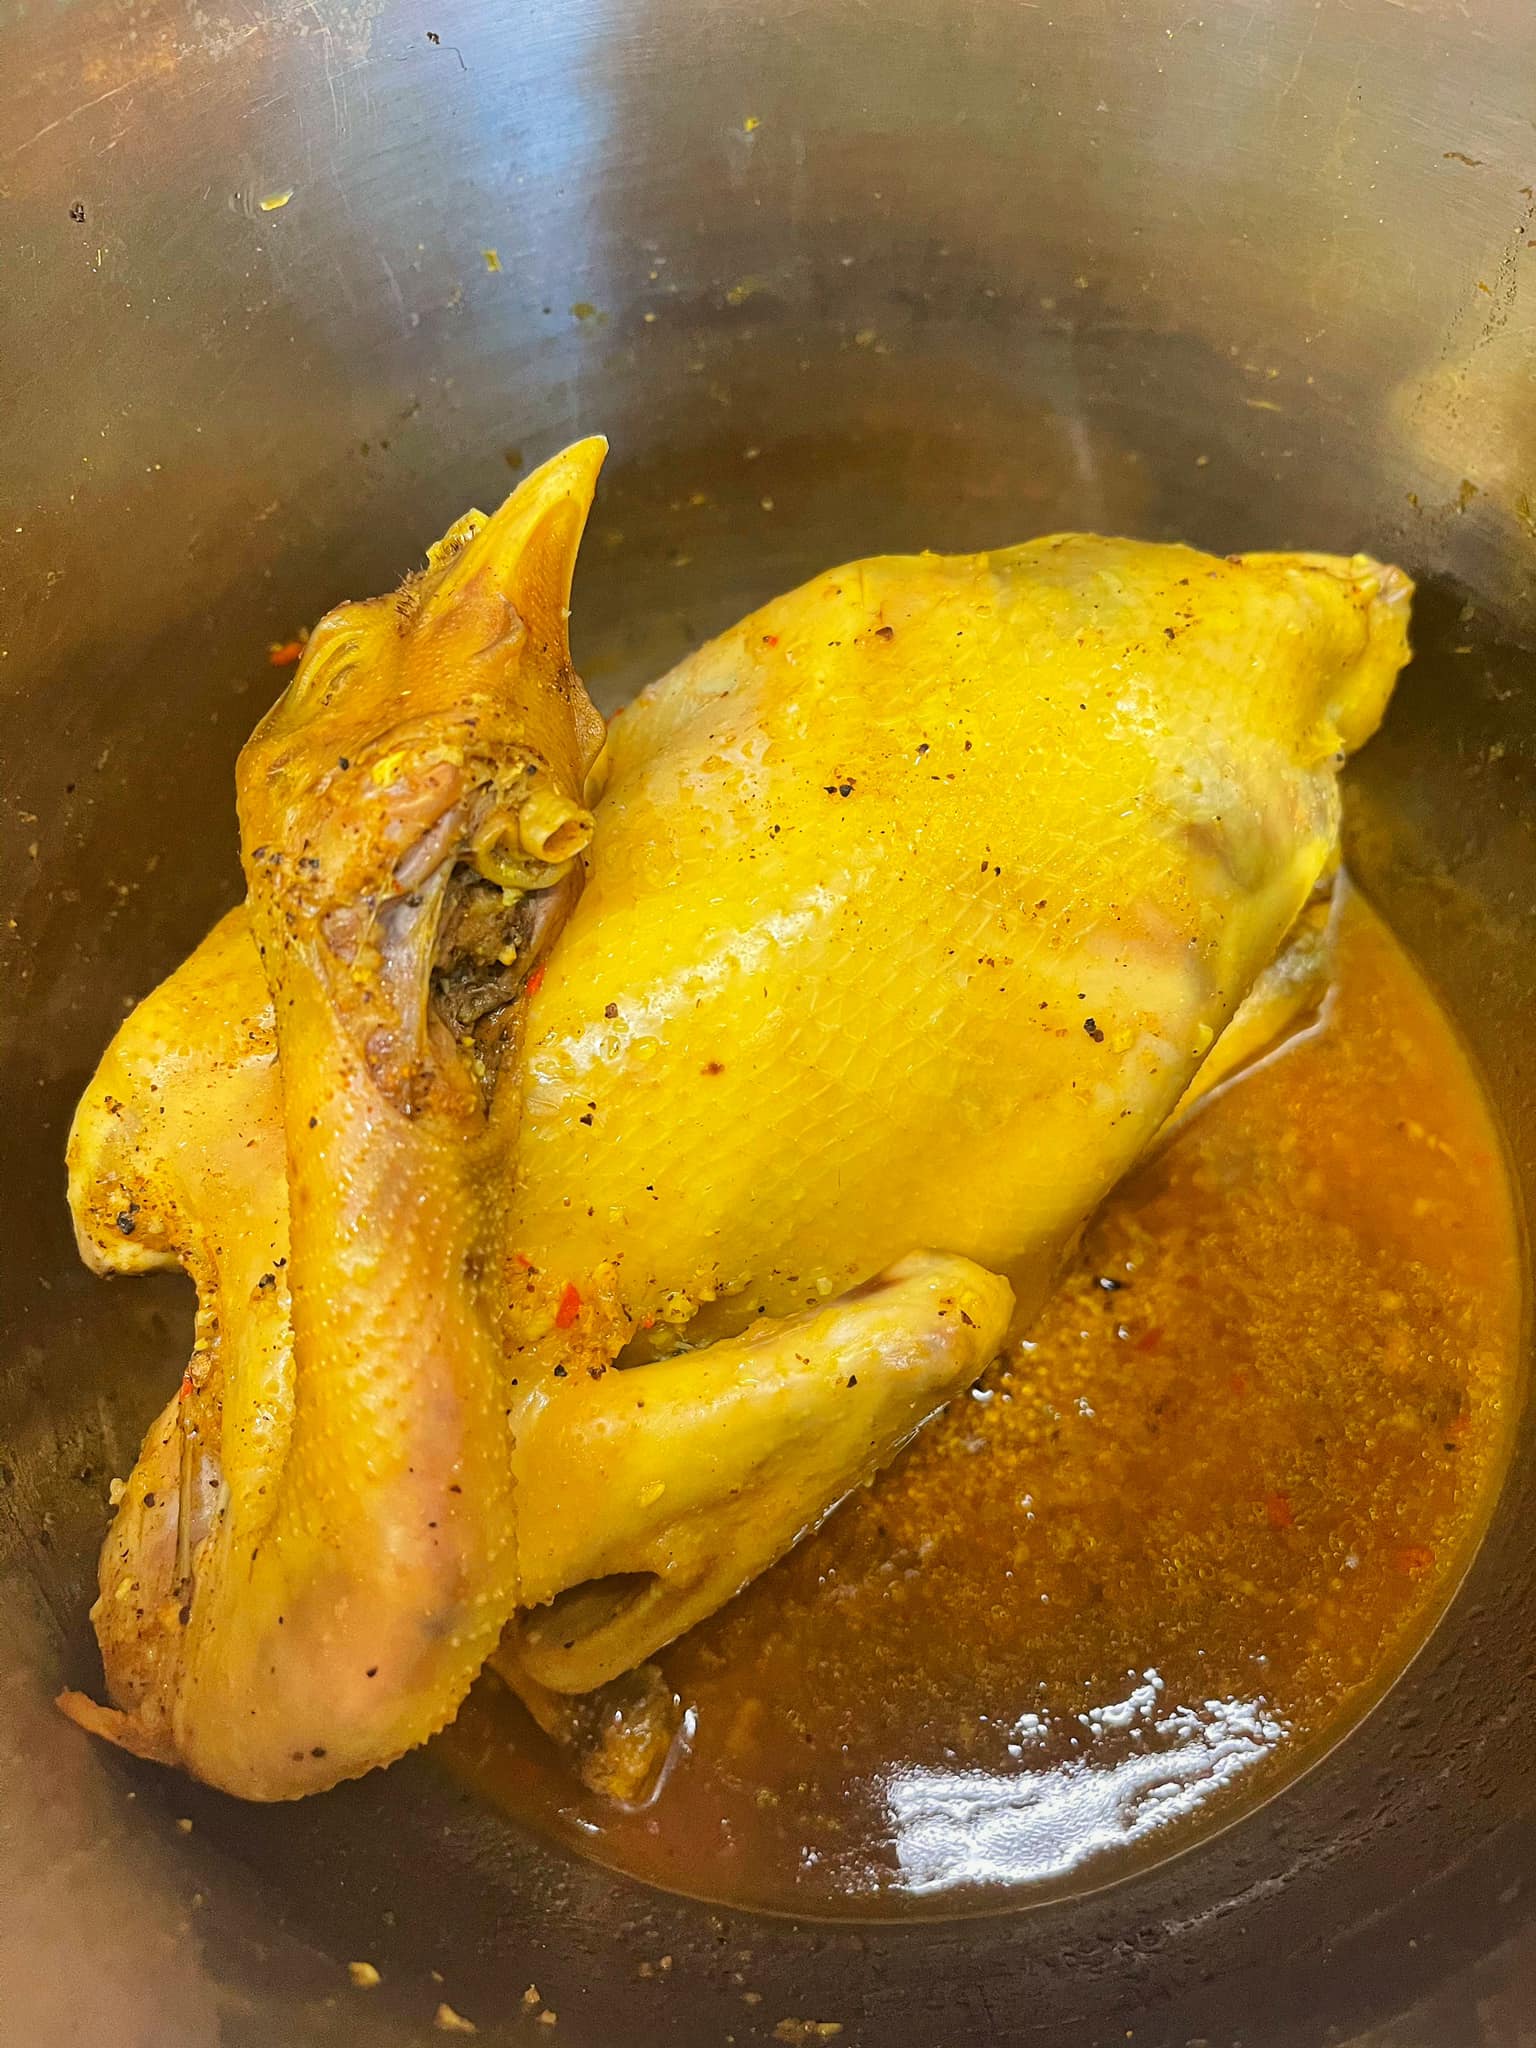 Bí quyết làm gà lên mâm thơm ngon, đẹp mắt cho bữa cơm gia đình - Ảnh 3.